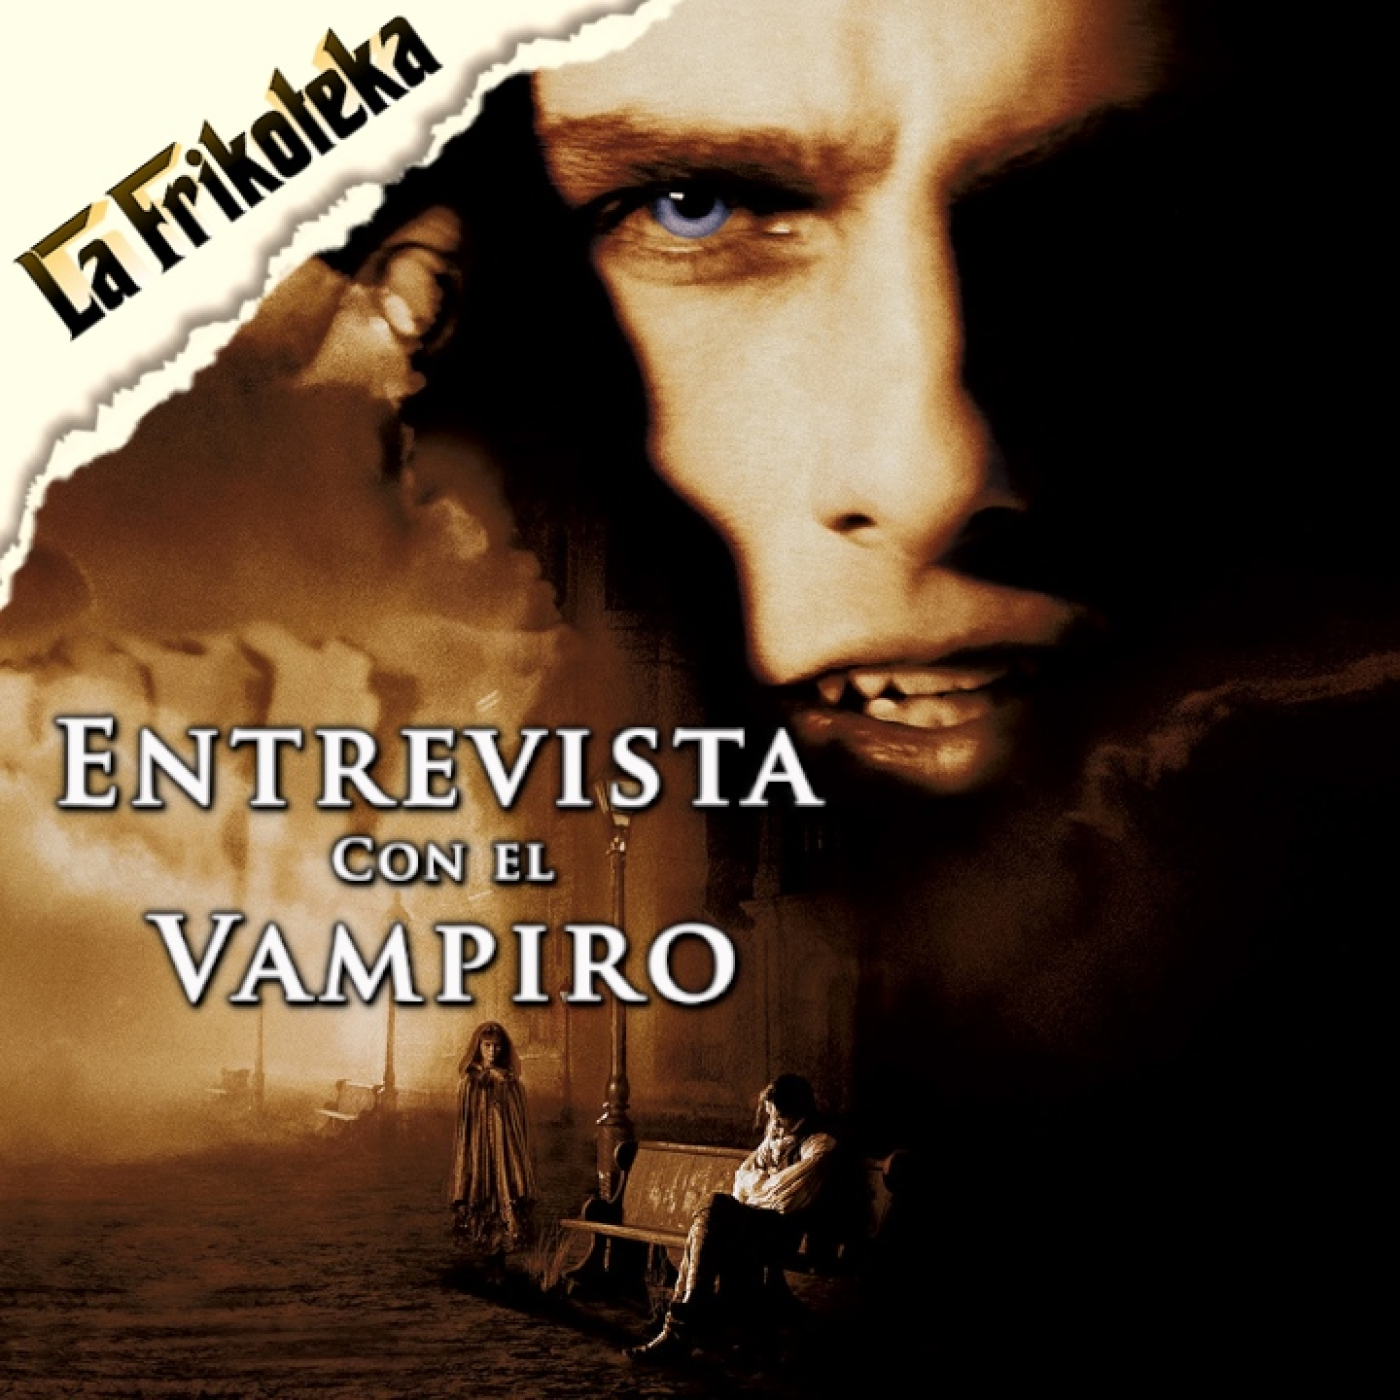 150 - Entrevista con el vampiro (1994) - Episodio exclusivo para mecenas